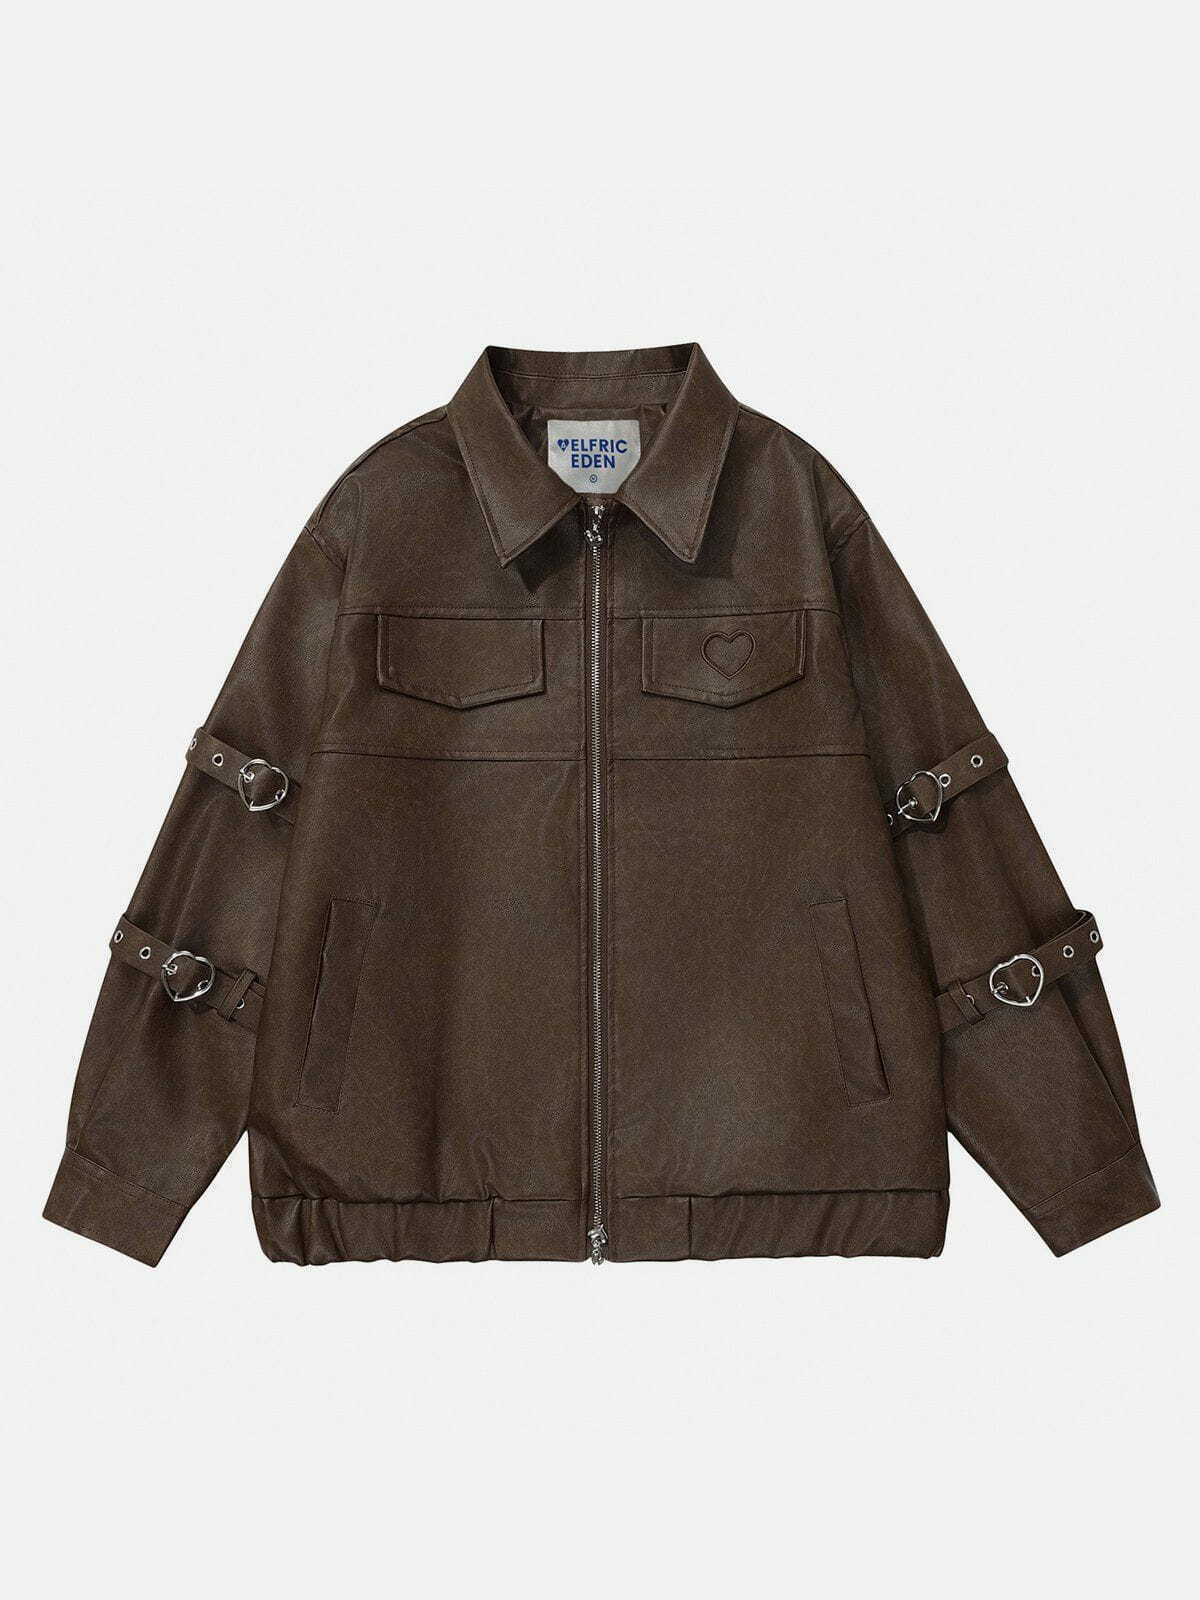 heart belt faux leather jacket edgy & chic streetwear 5952